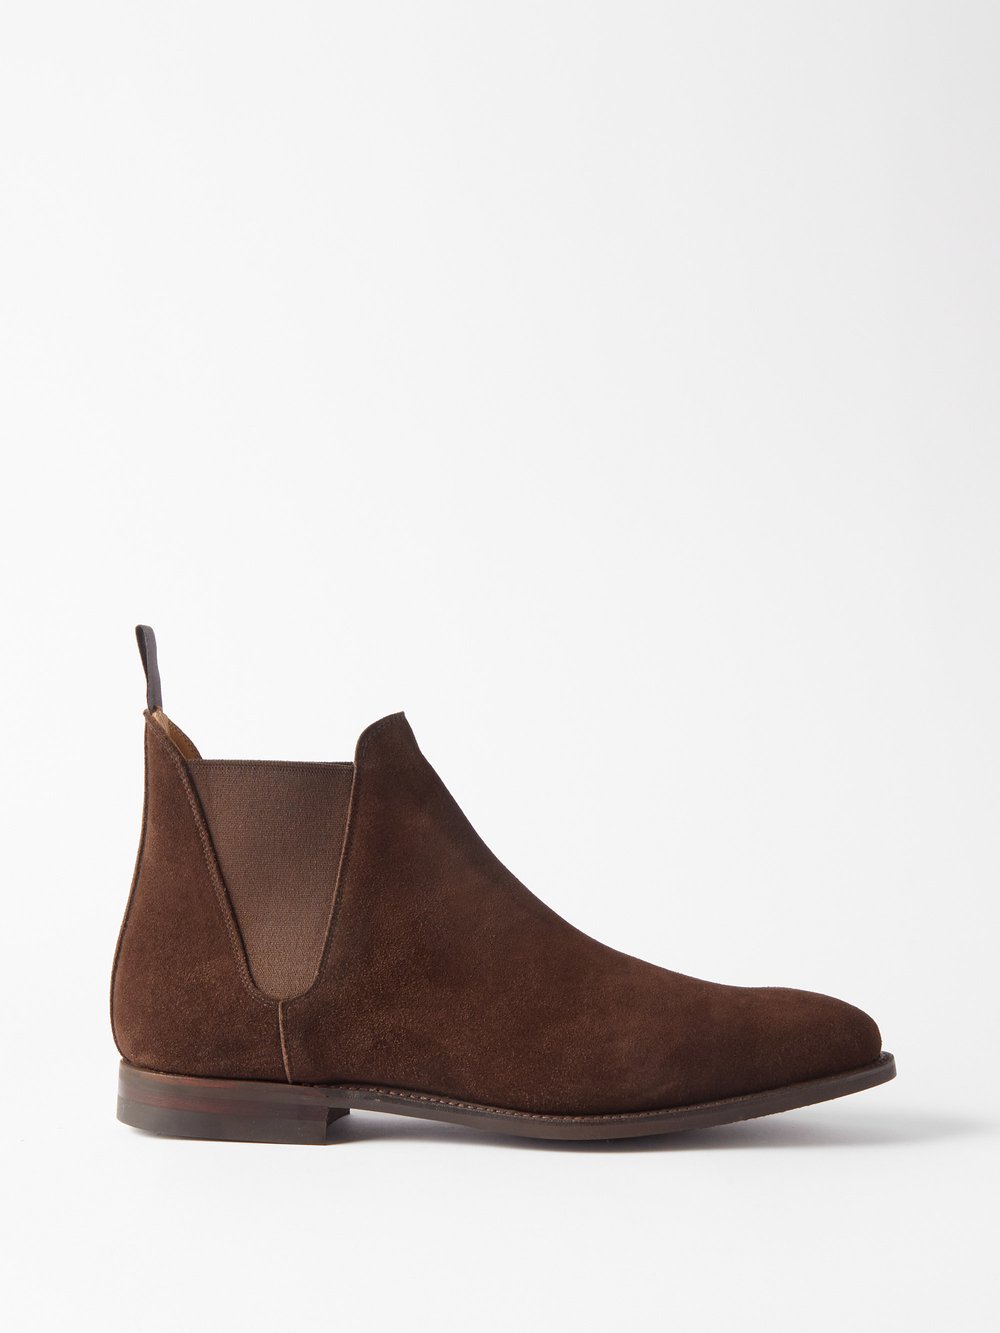 Замшевые ботинки челси Crockett & Jones, коричневый